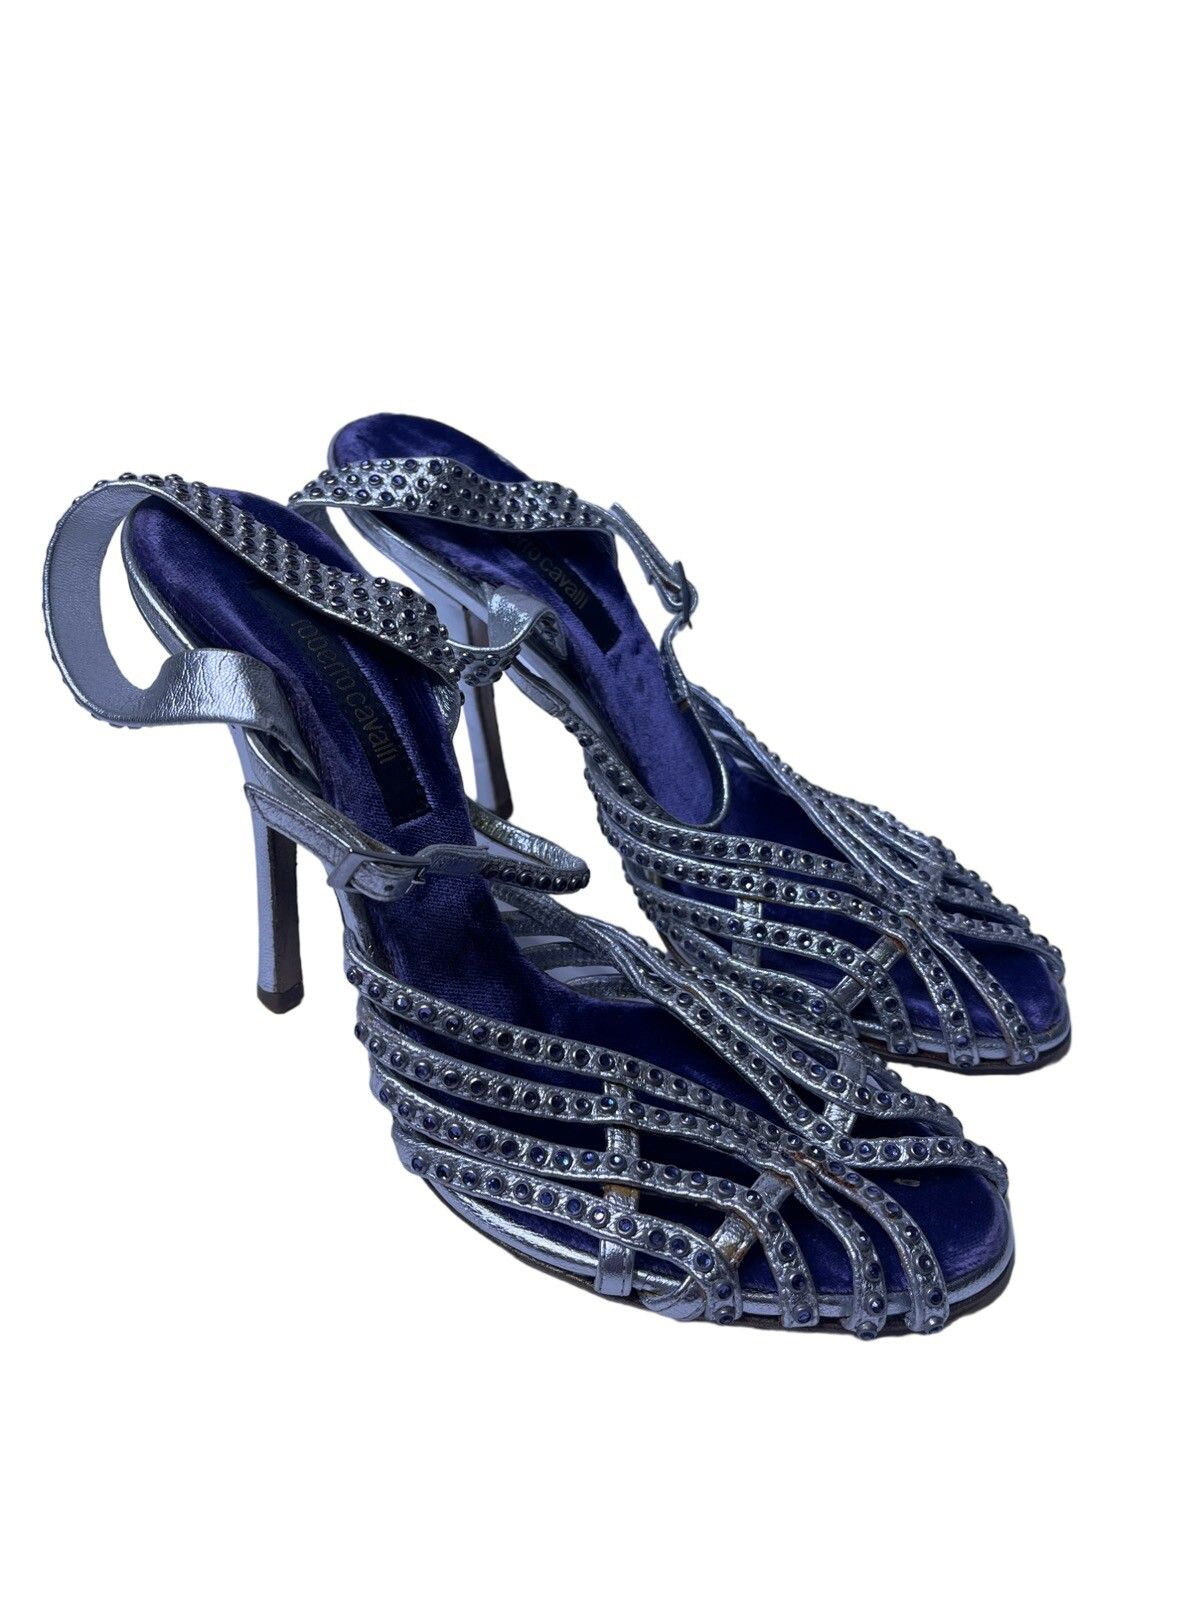 Roberto Cavalli Roberto Cavalli vintage crystal heels | Grailed